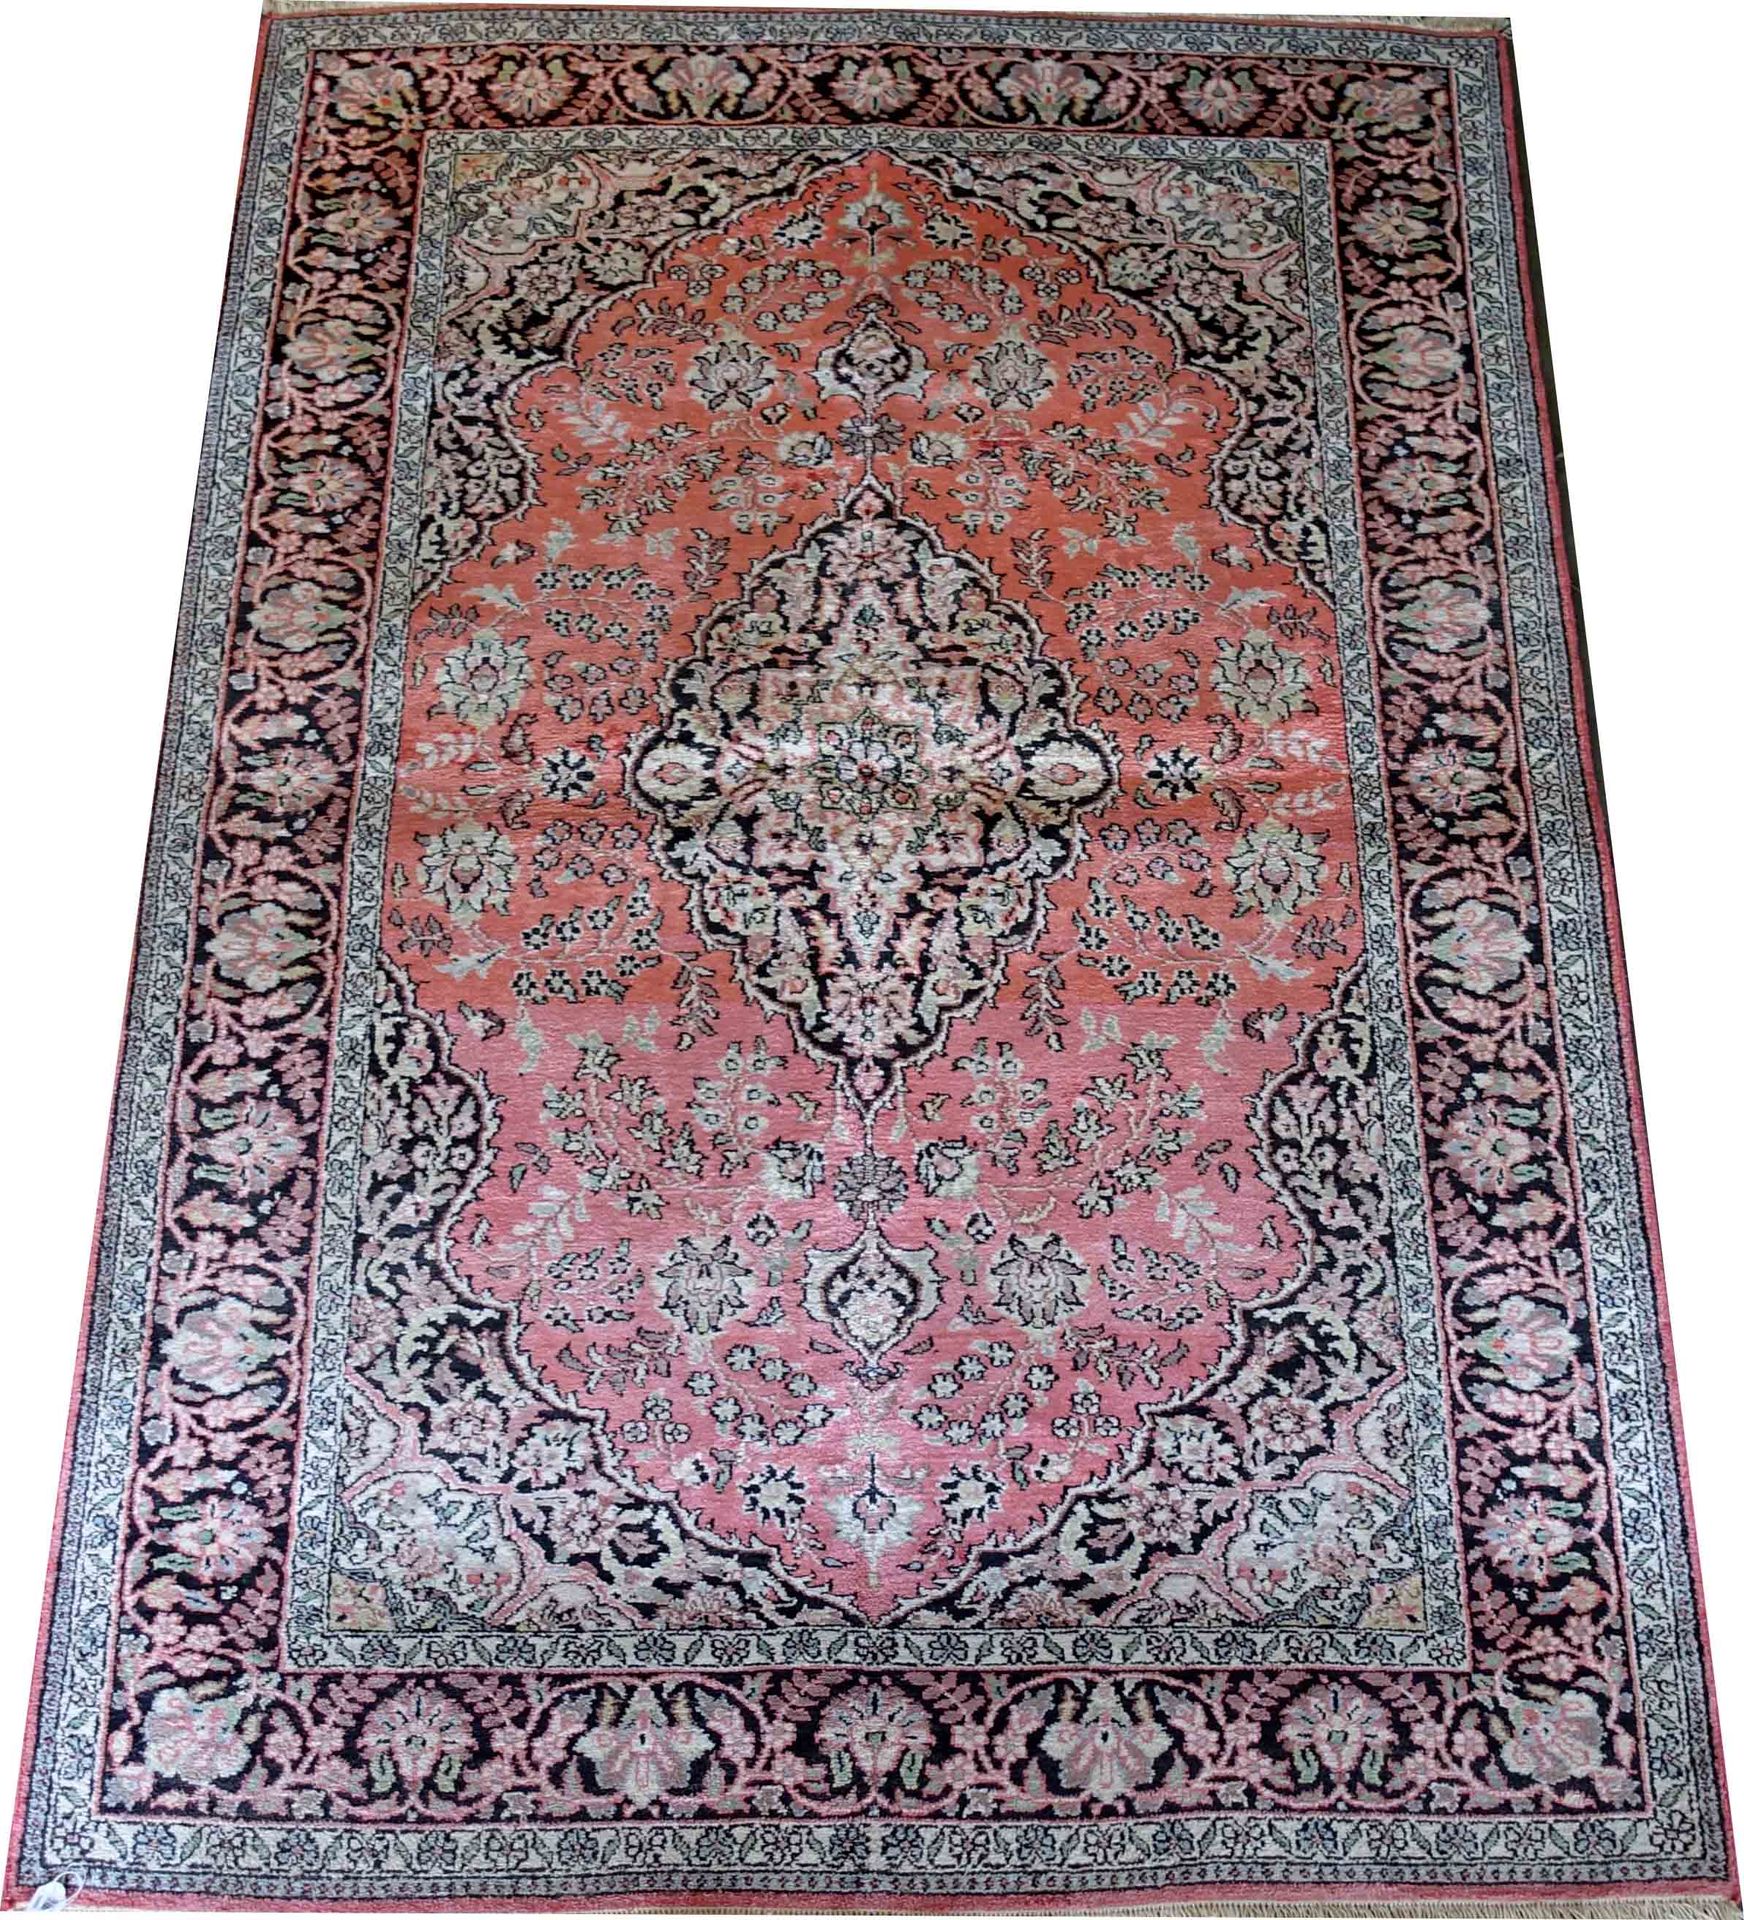 Carpette Ghoum. 背景是洒满鲜花的粉红色，中间是一个椭圆形的奖章。黑色的背景边框。丝绸。尺寸：182 x 125厘米。